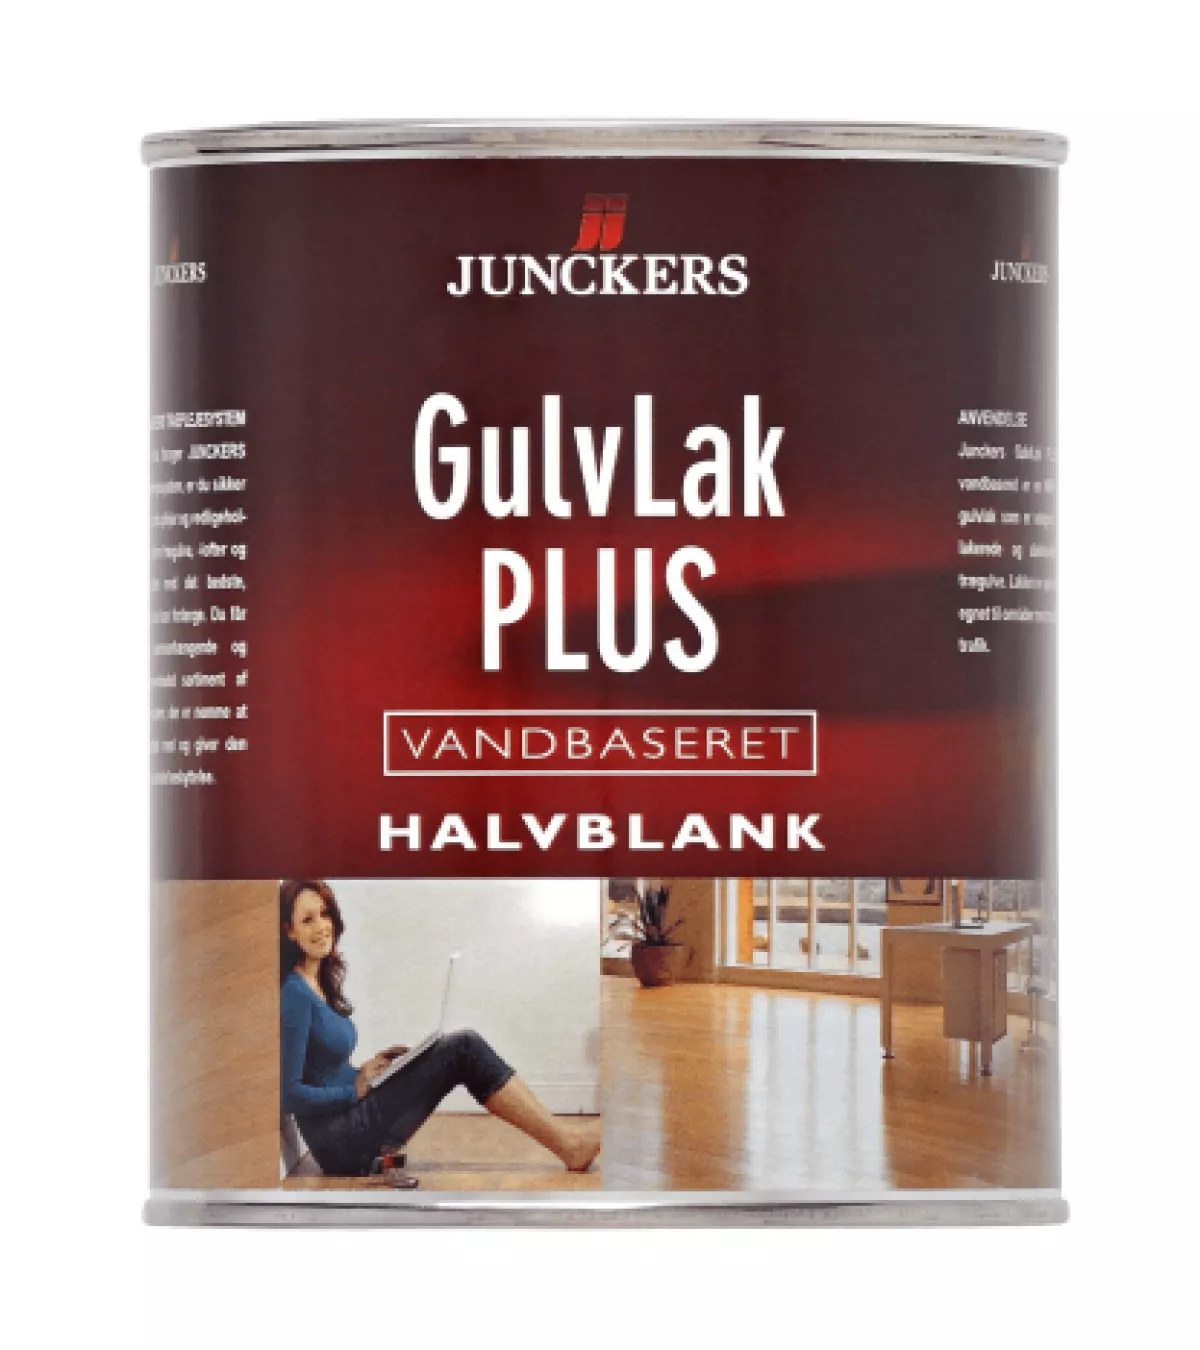 #2 - Junckers GulvLak Plus Halvblank, vandbaseret 2,5 L